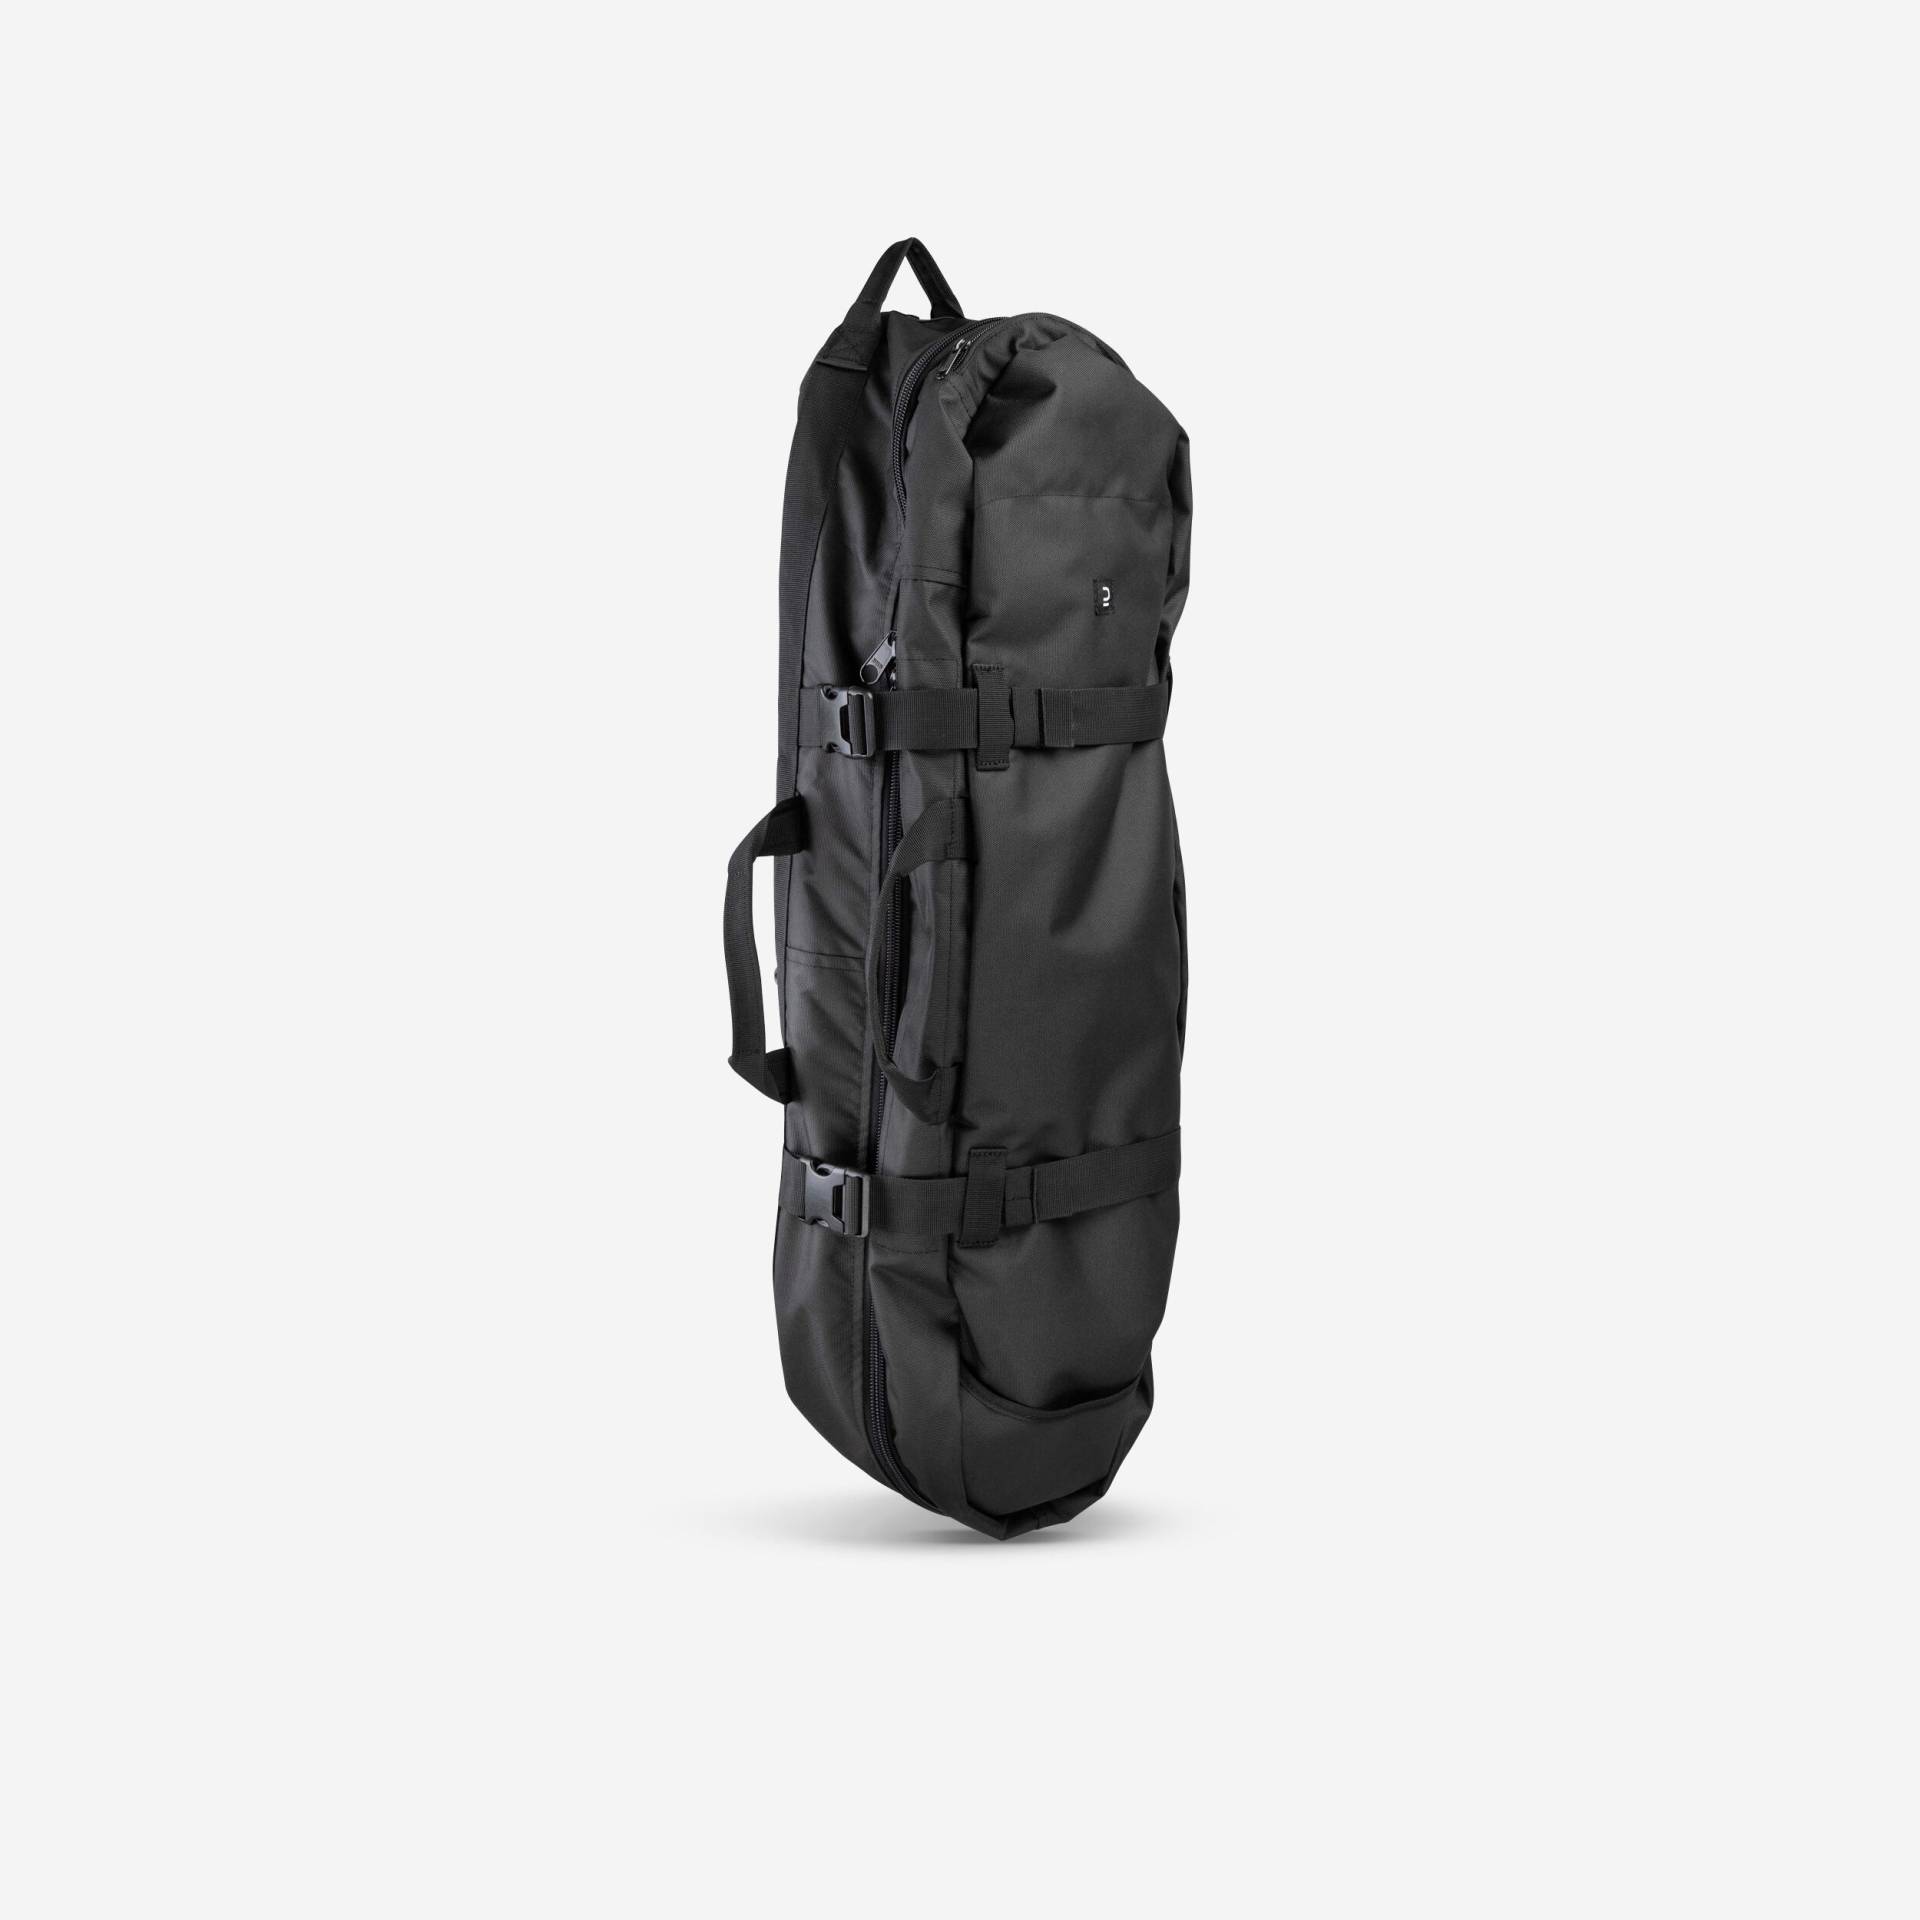 Boardbag Skateboardtasche - SC500 schwarz von Decathlon